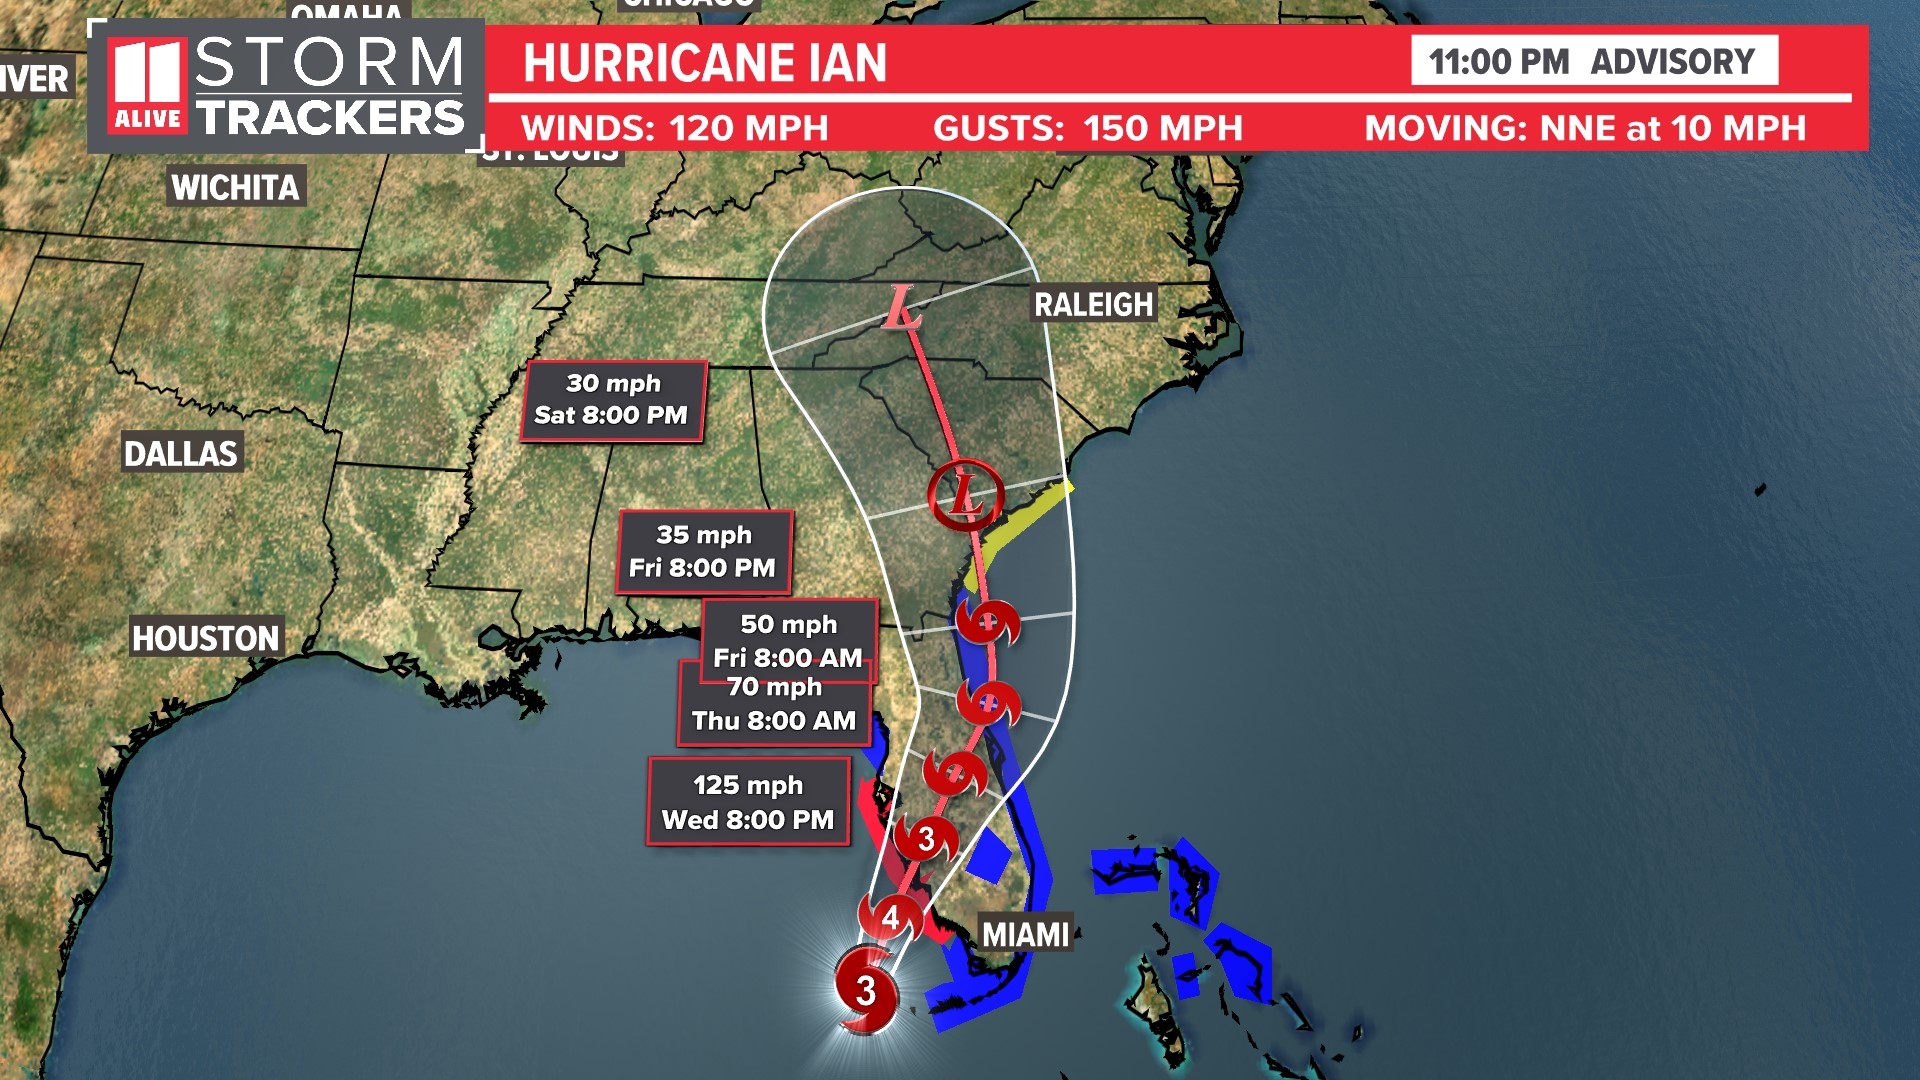 Ian nearing landfall in SW Florida